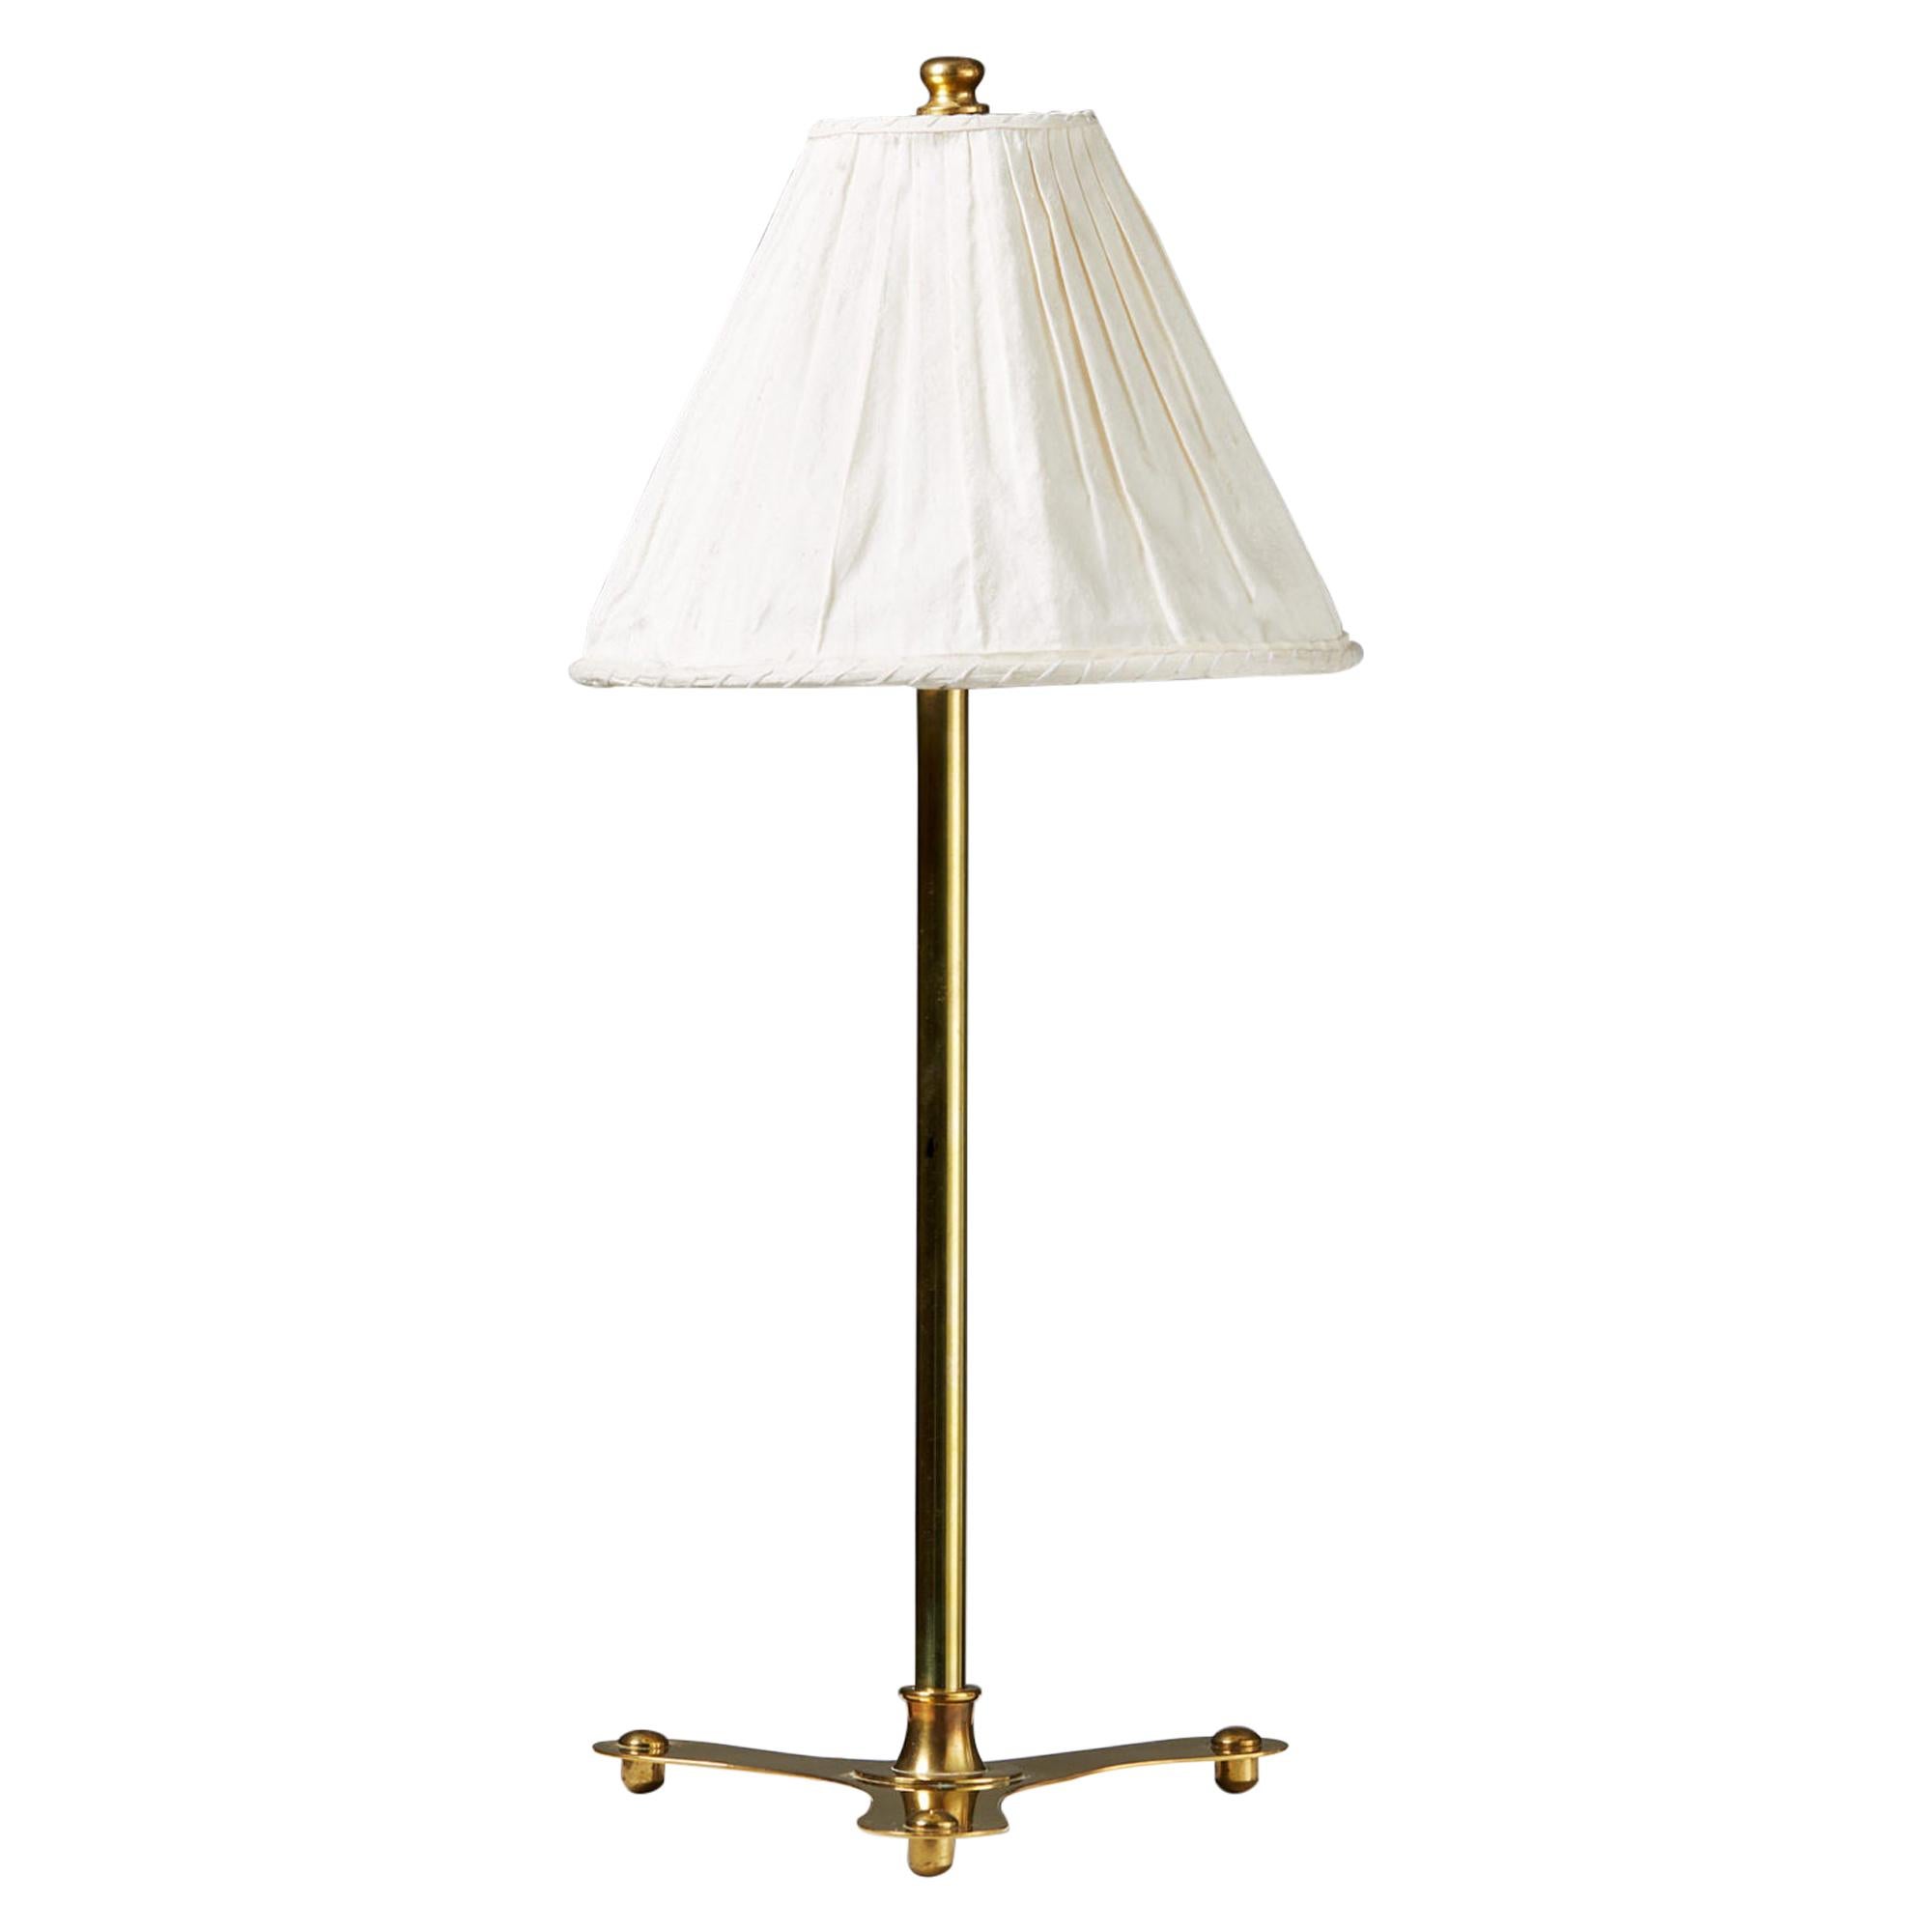 Table lamp model 2552 designed by Josef Frank for Svenskt Tenn, Sweden. 1950s